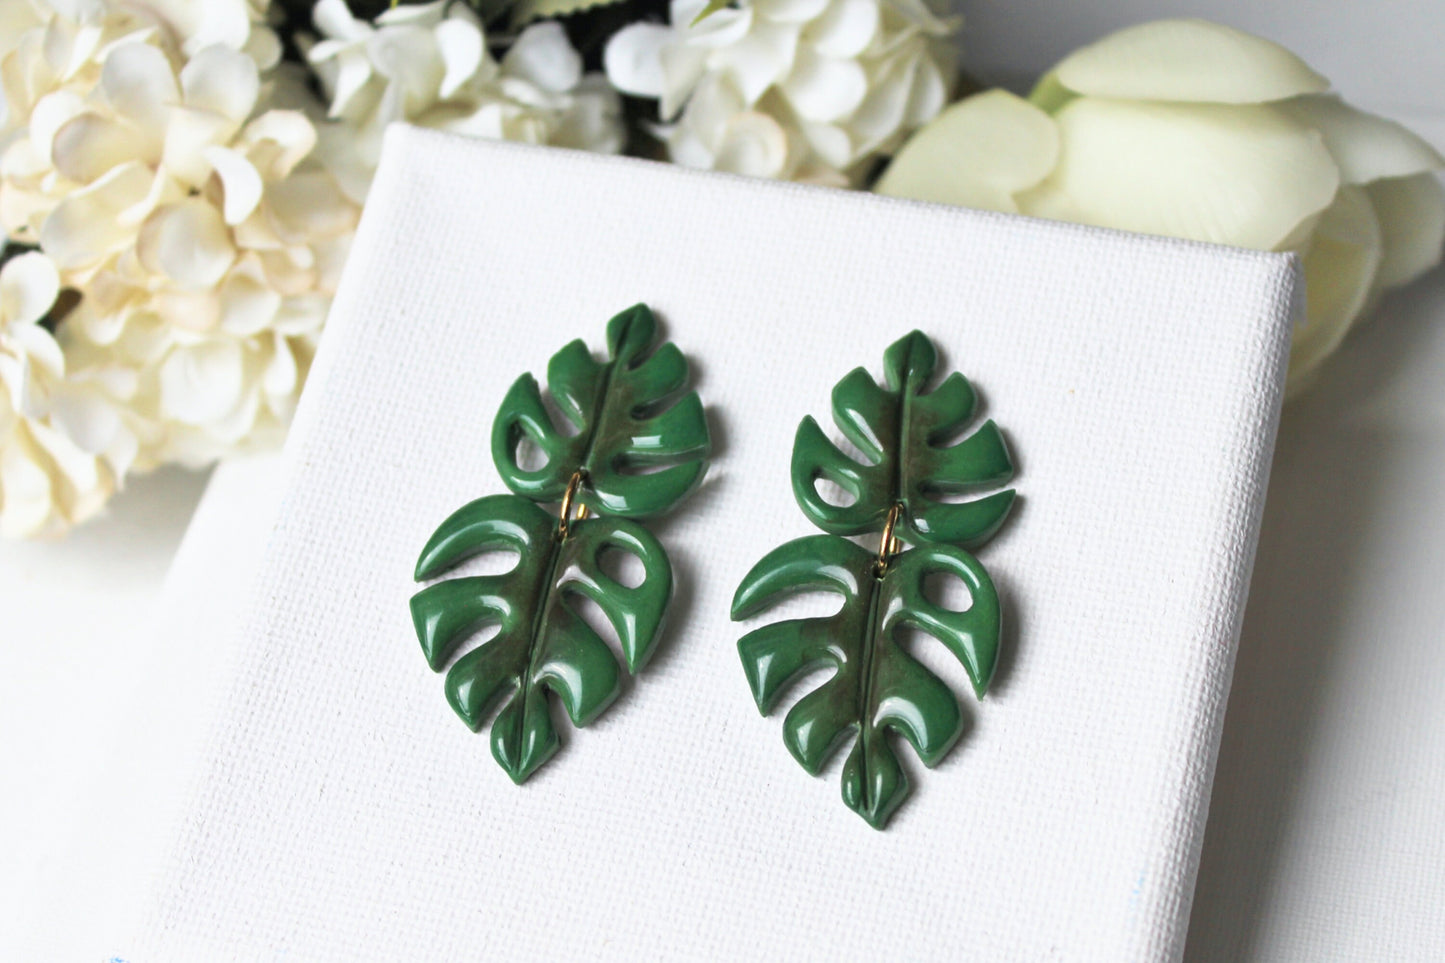 Monstera Leaf Earrings, Leaf Earrings, Polymer Clay Earrings, Green, Statement Earrings, Plant Earrings, Clay Earrings, Handmade, Gift